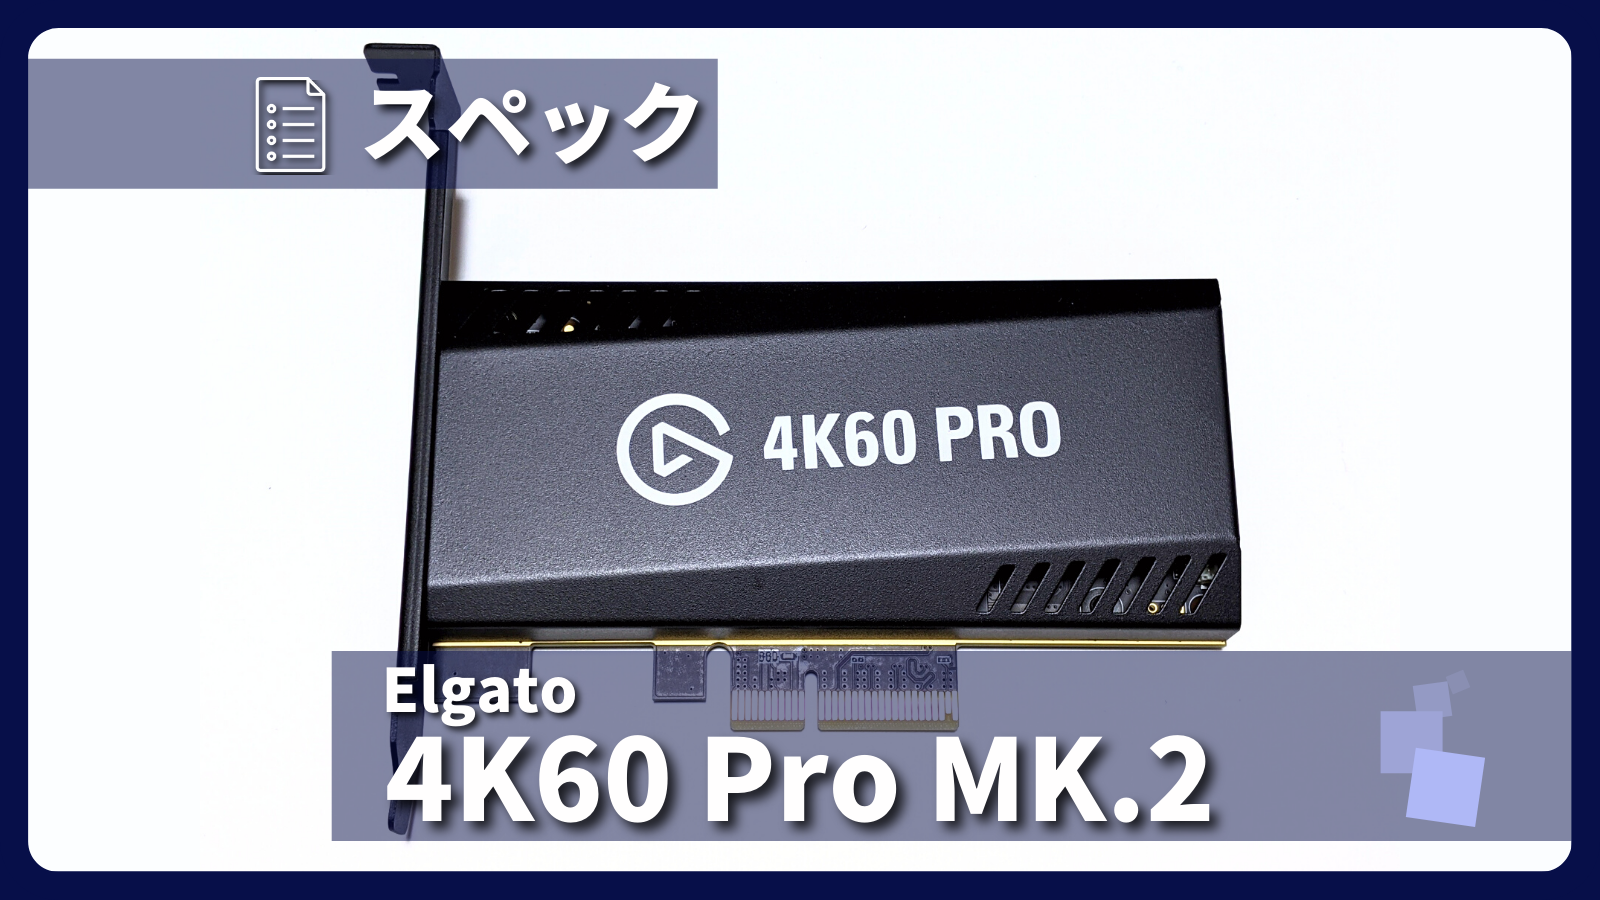 アイキャッチ画像・Elgato Game Capture 4K60 Pro MK.2 スペック紹介